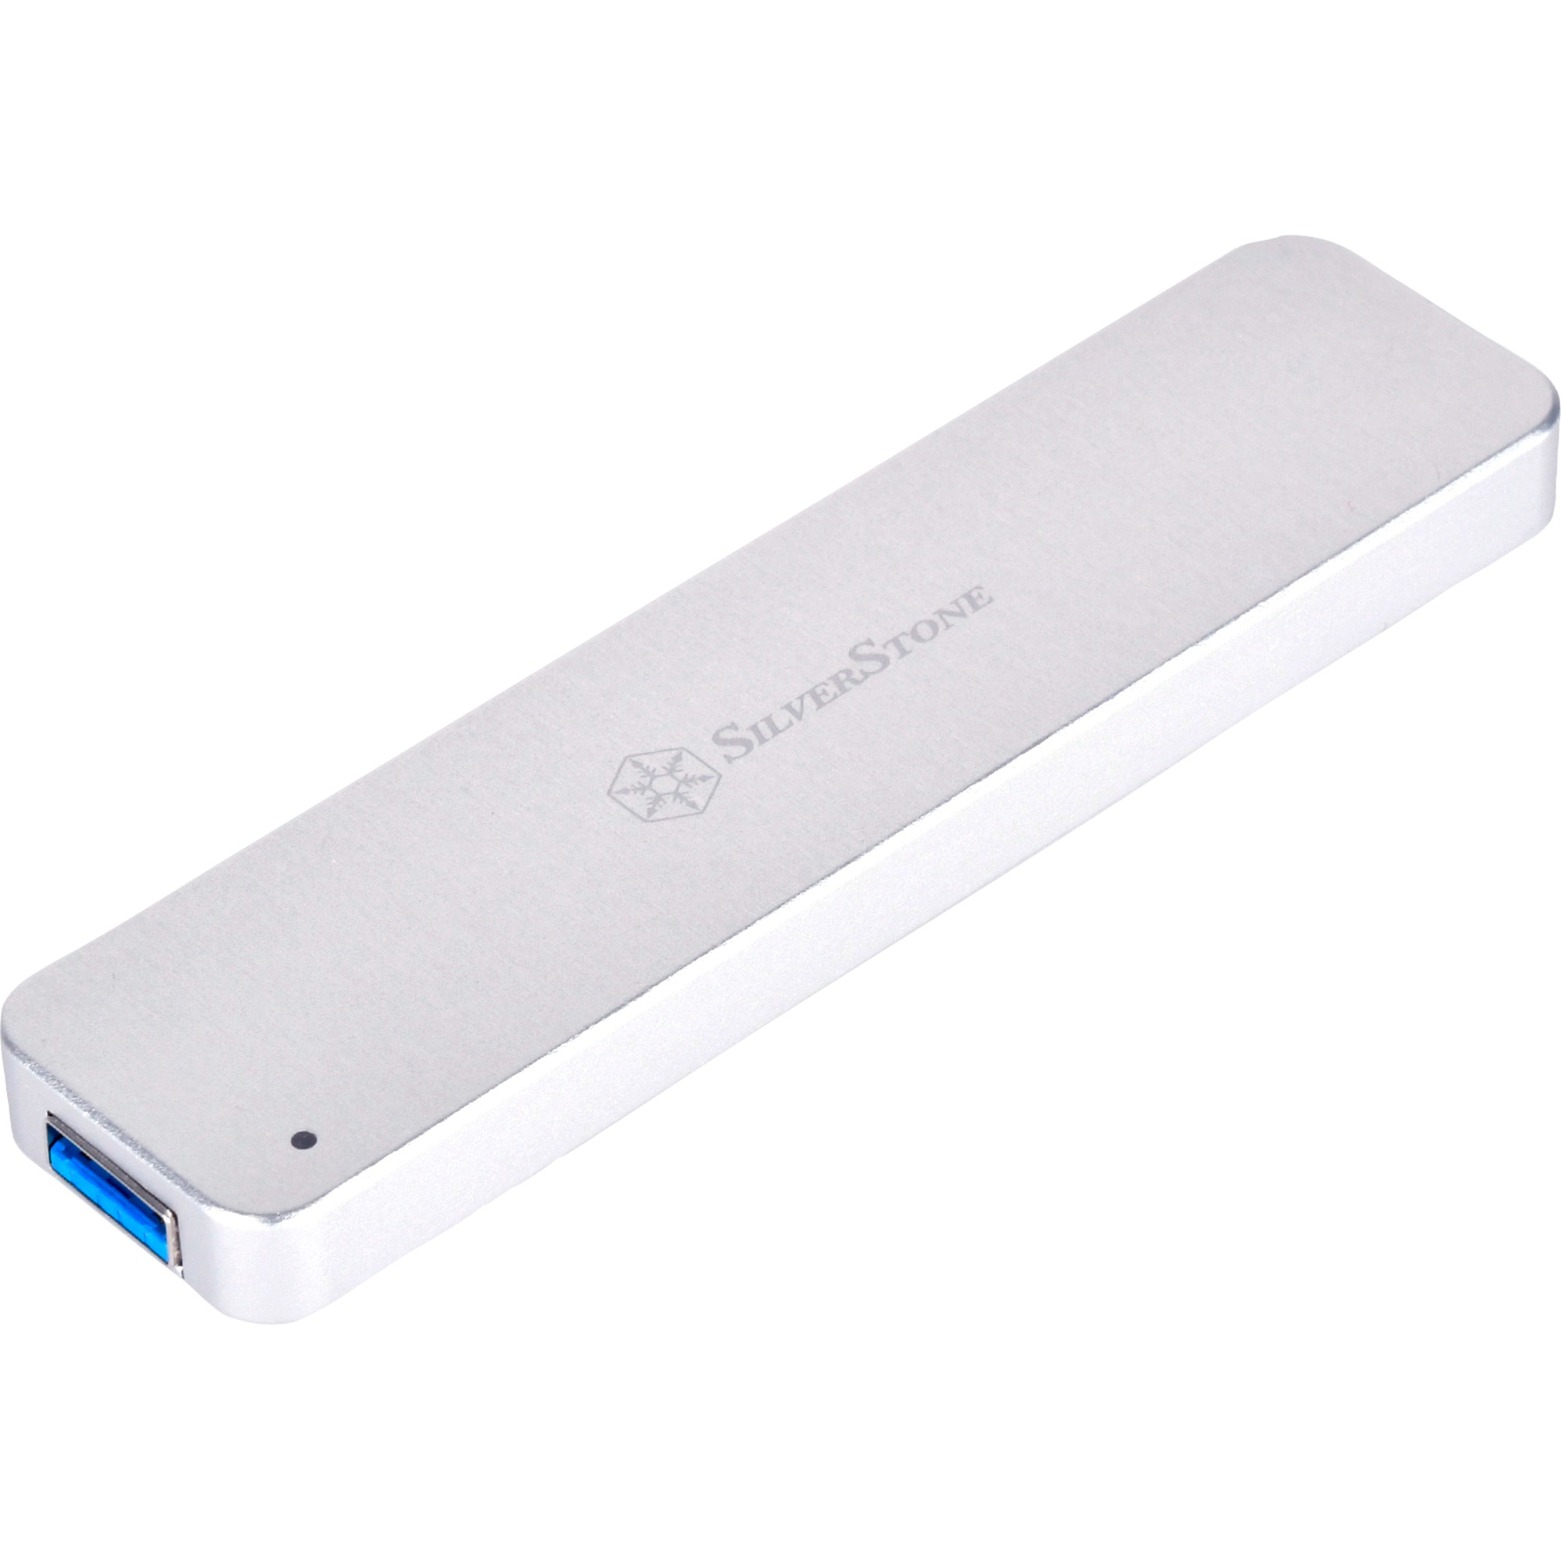 Image of Alternate - SST-MS09S USB 3.1, Laufwerksgehäuse online einkaufen bei Alternate